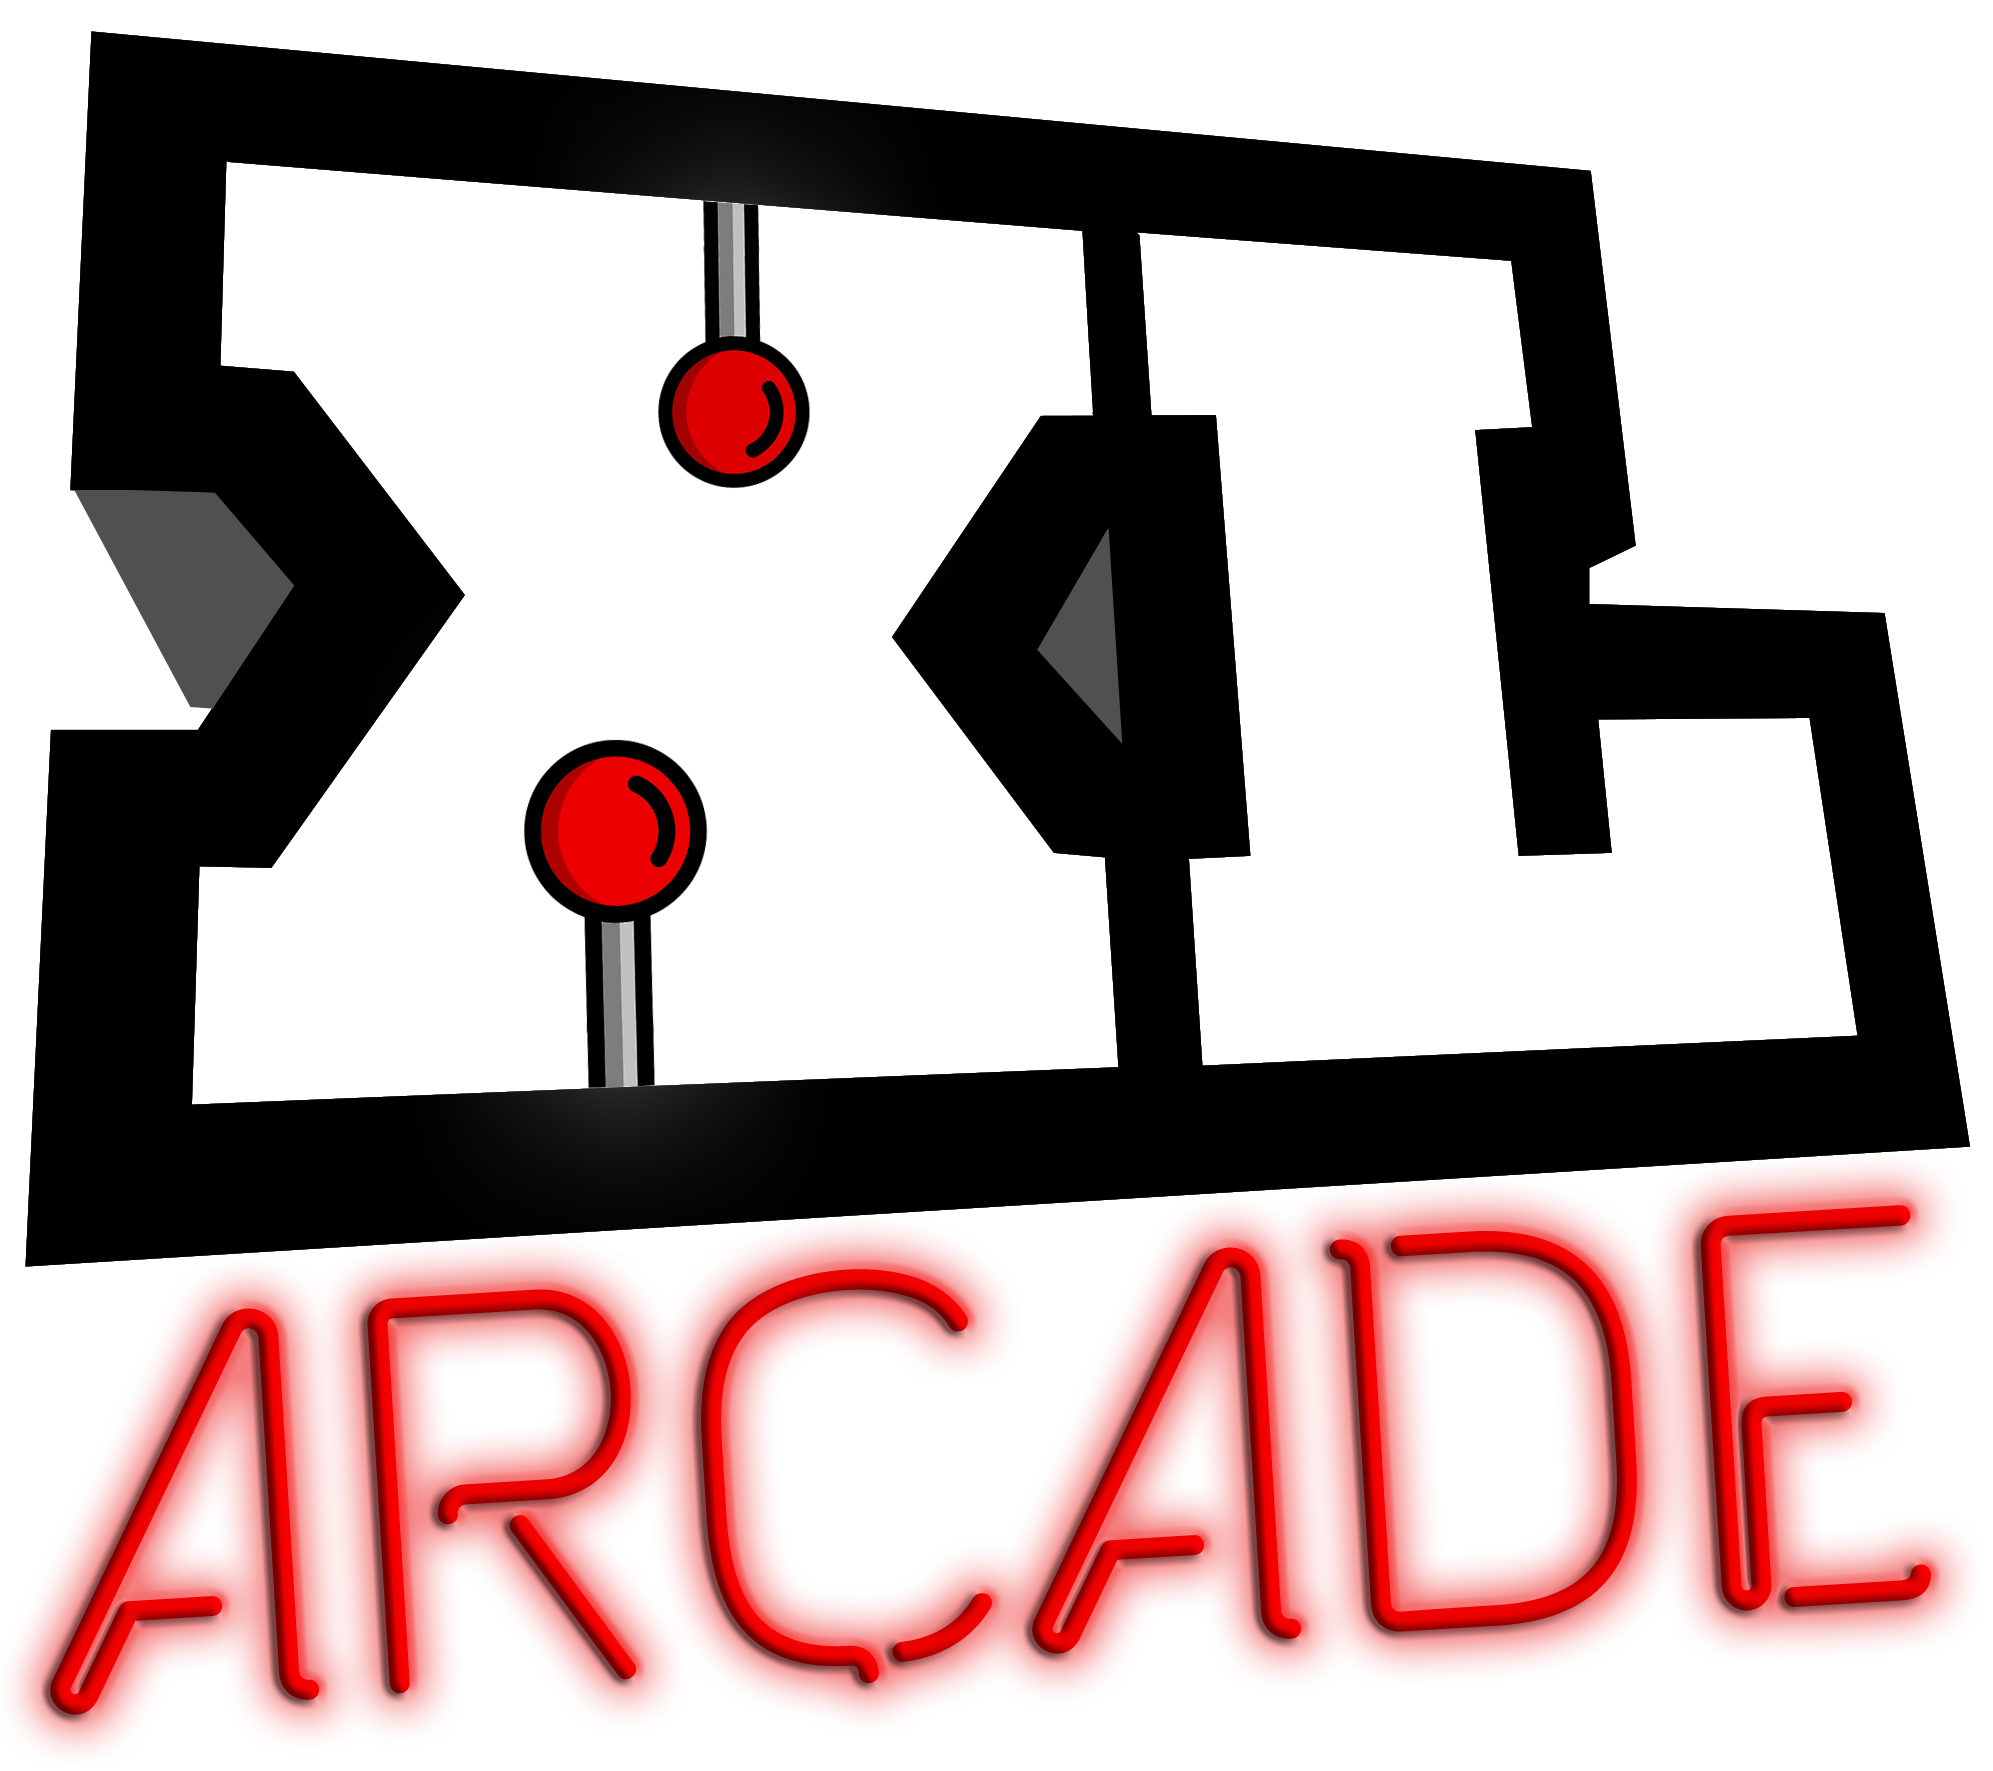 XL Arcade